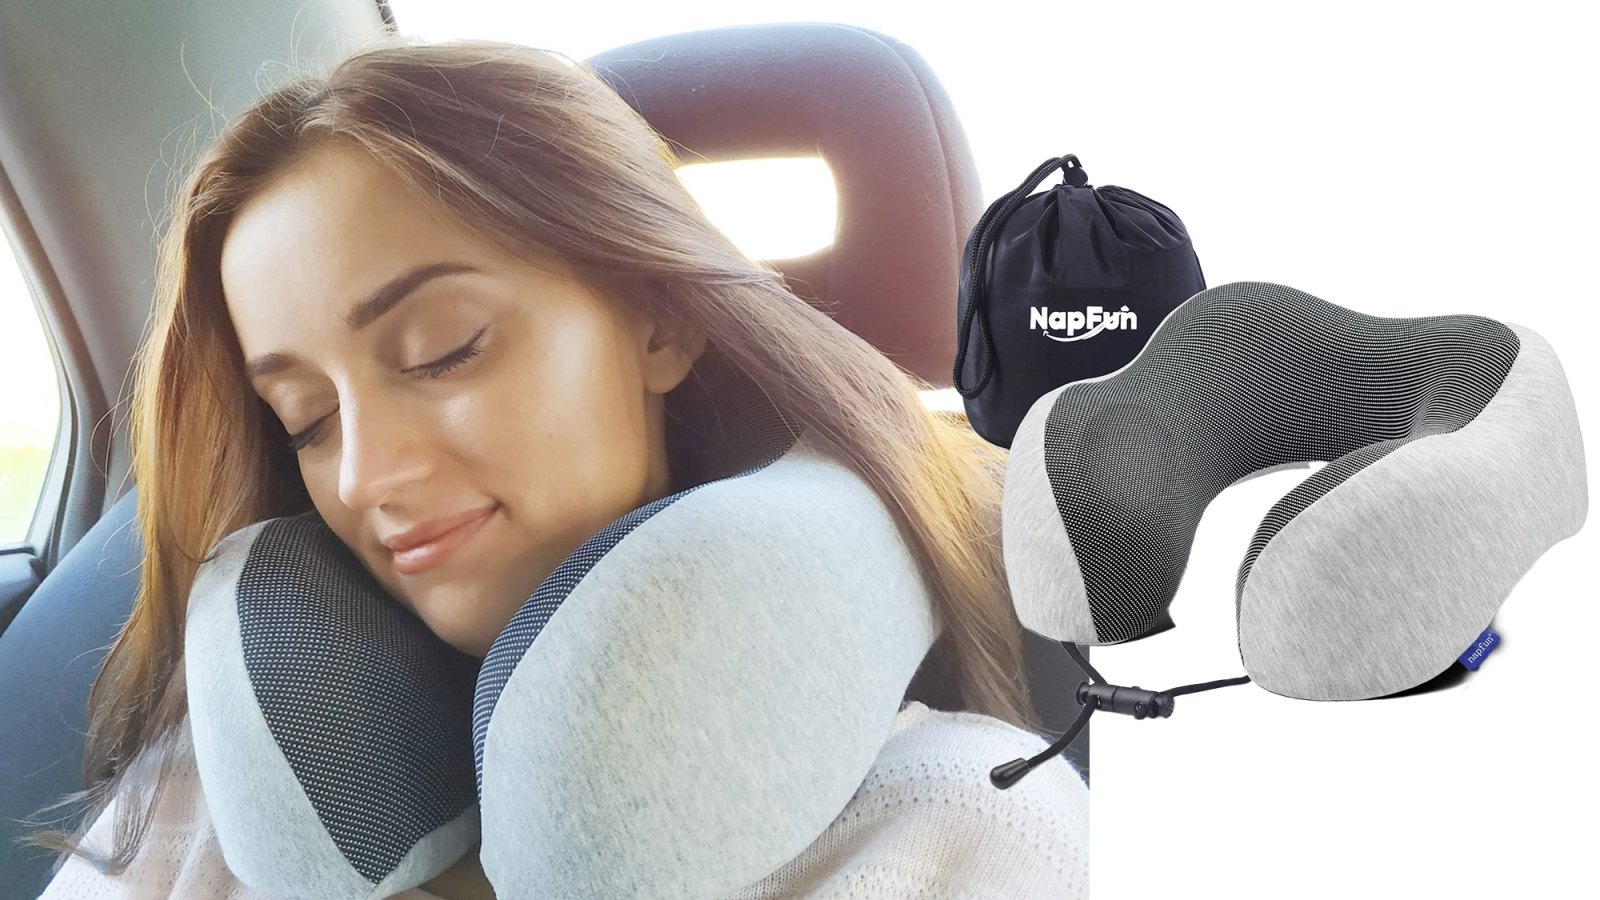 Napfun neck pillow